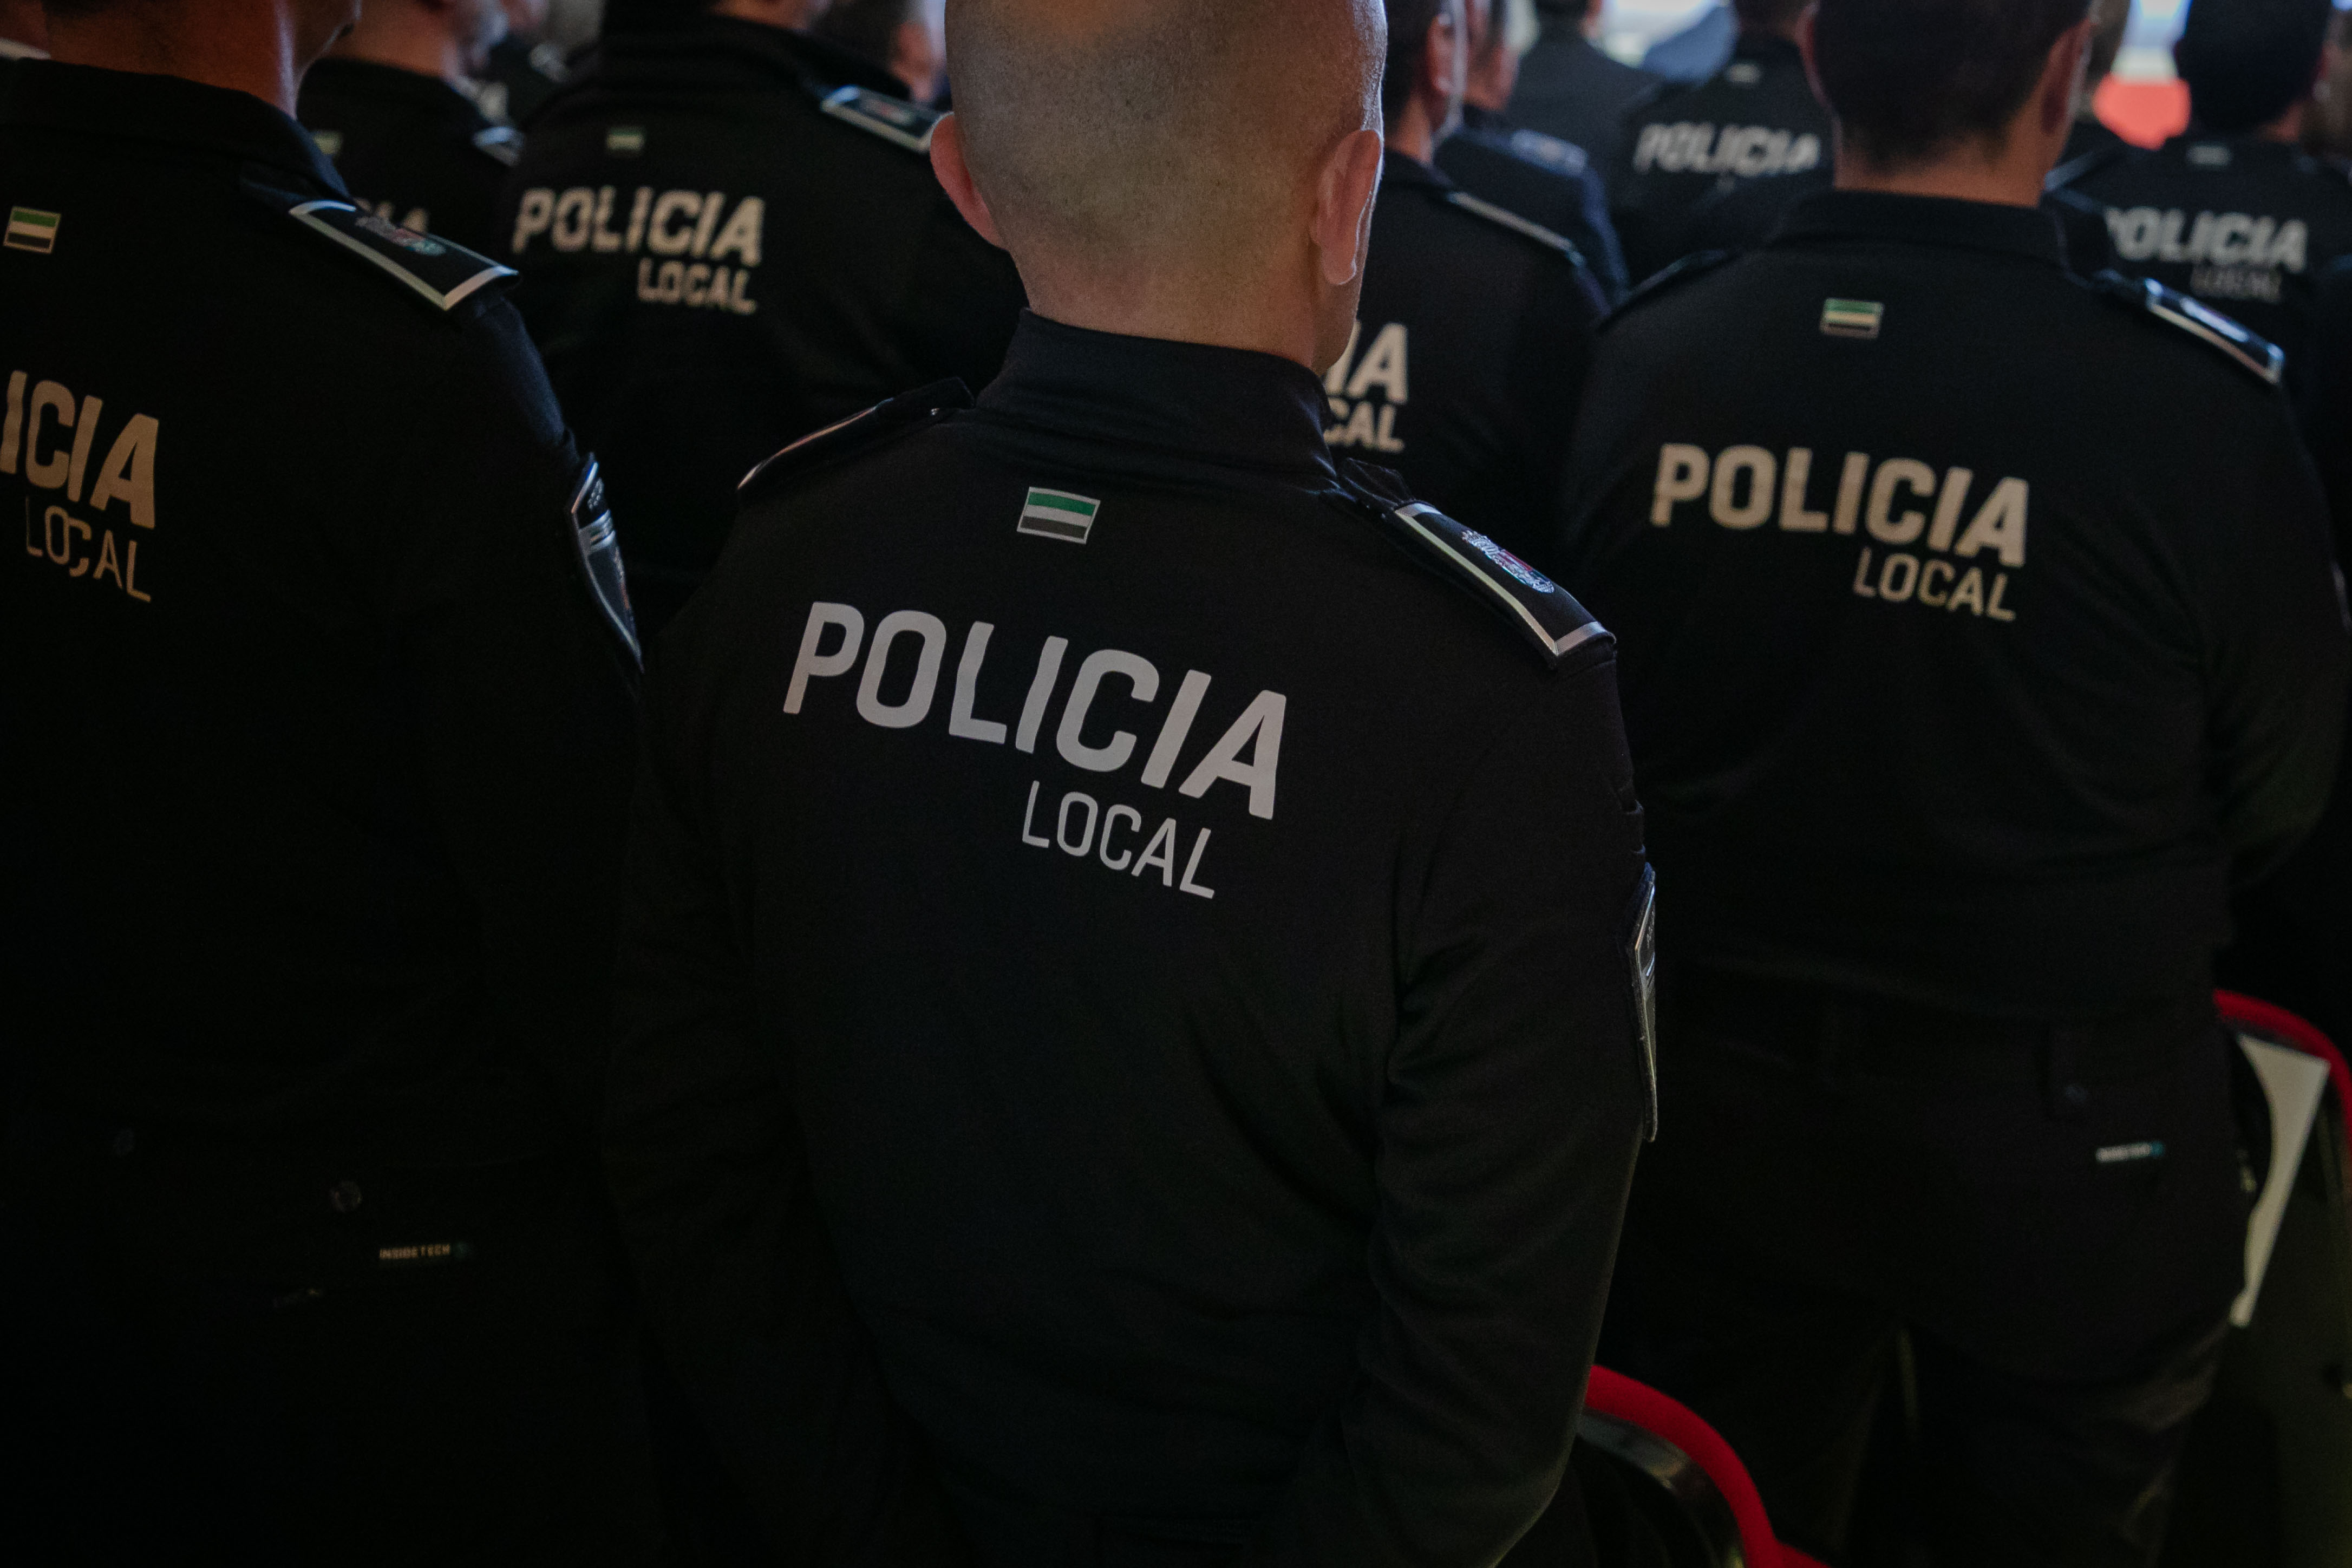 Detalle del uniforme de policías locales